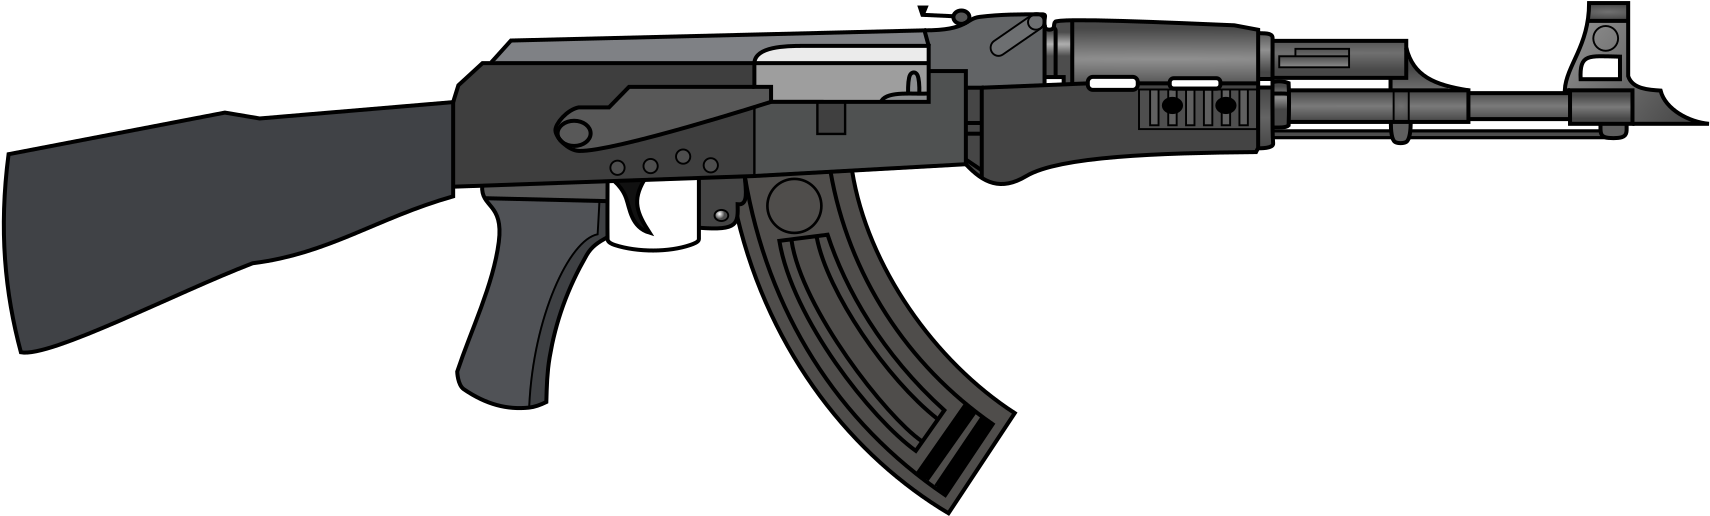 1739 X 537 6 - Black Ak 47 Gun Clipart (1739x537), Png Download